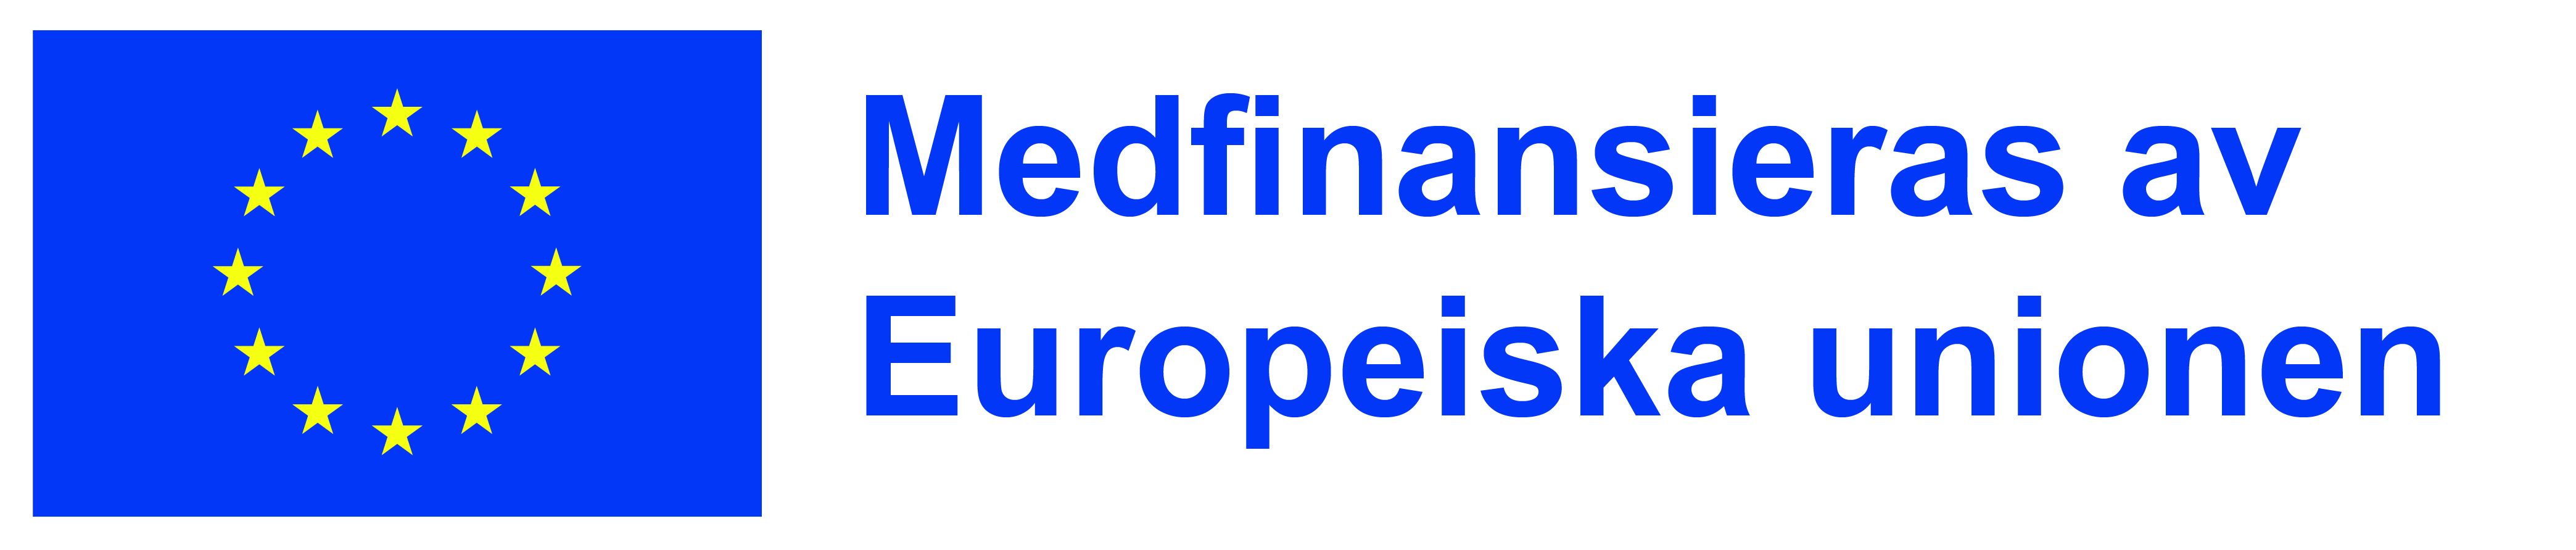 EU-logotypen och texten "Medfinansieras av Europeiska unionen"